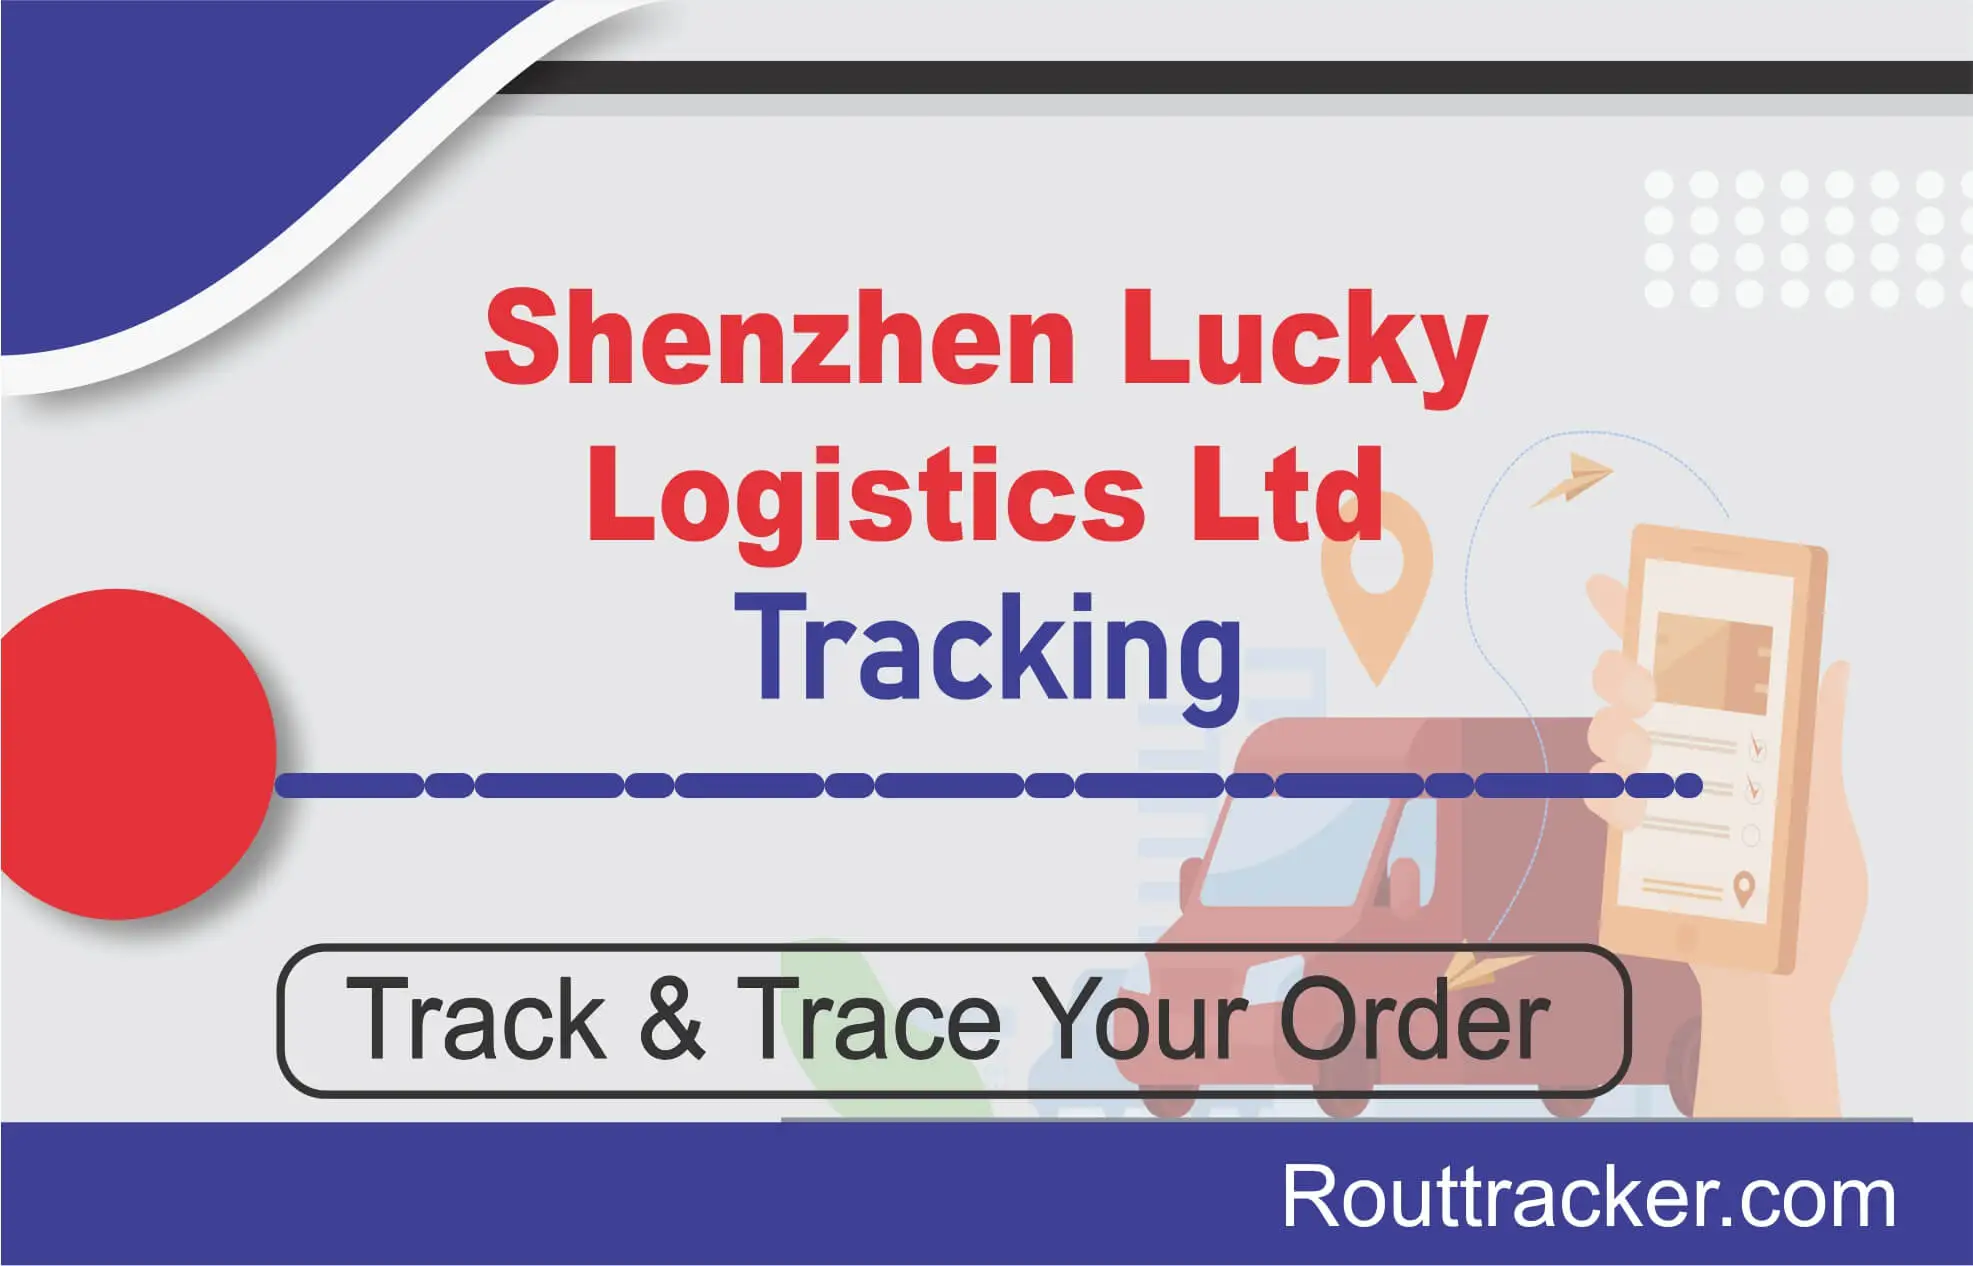 Shenzhen Lucky Logistics Ltd Tracking